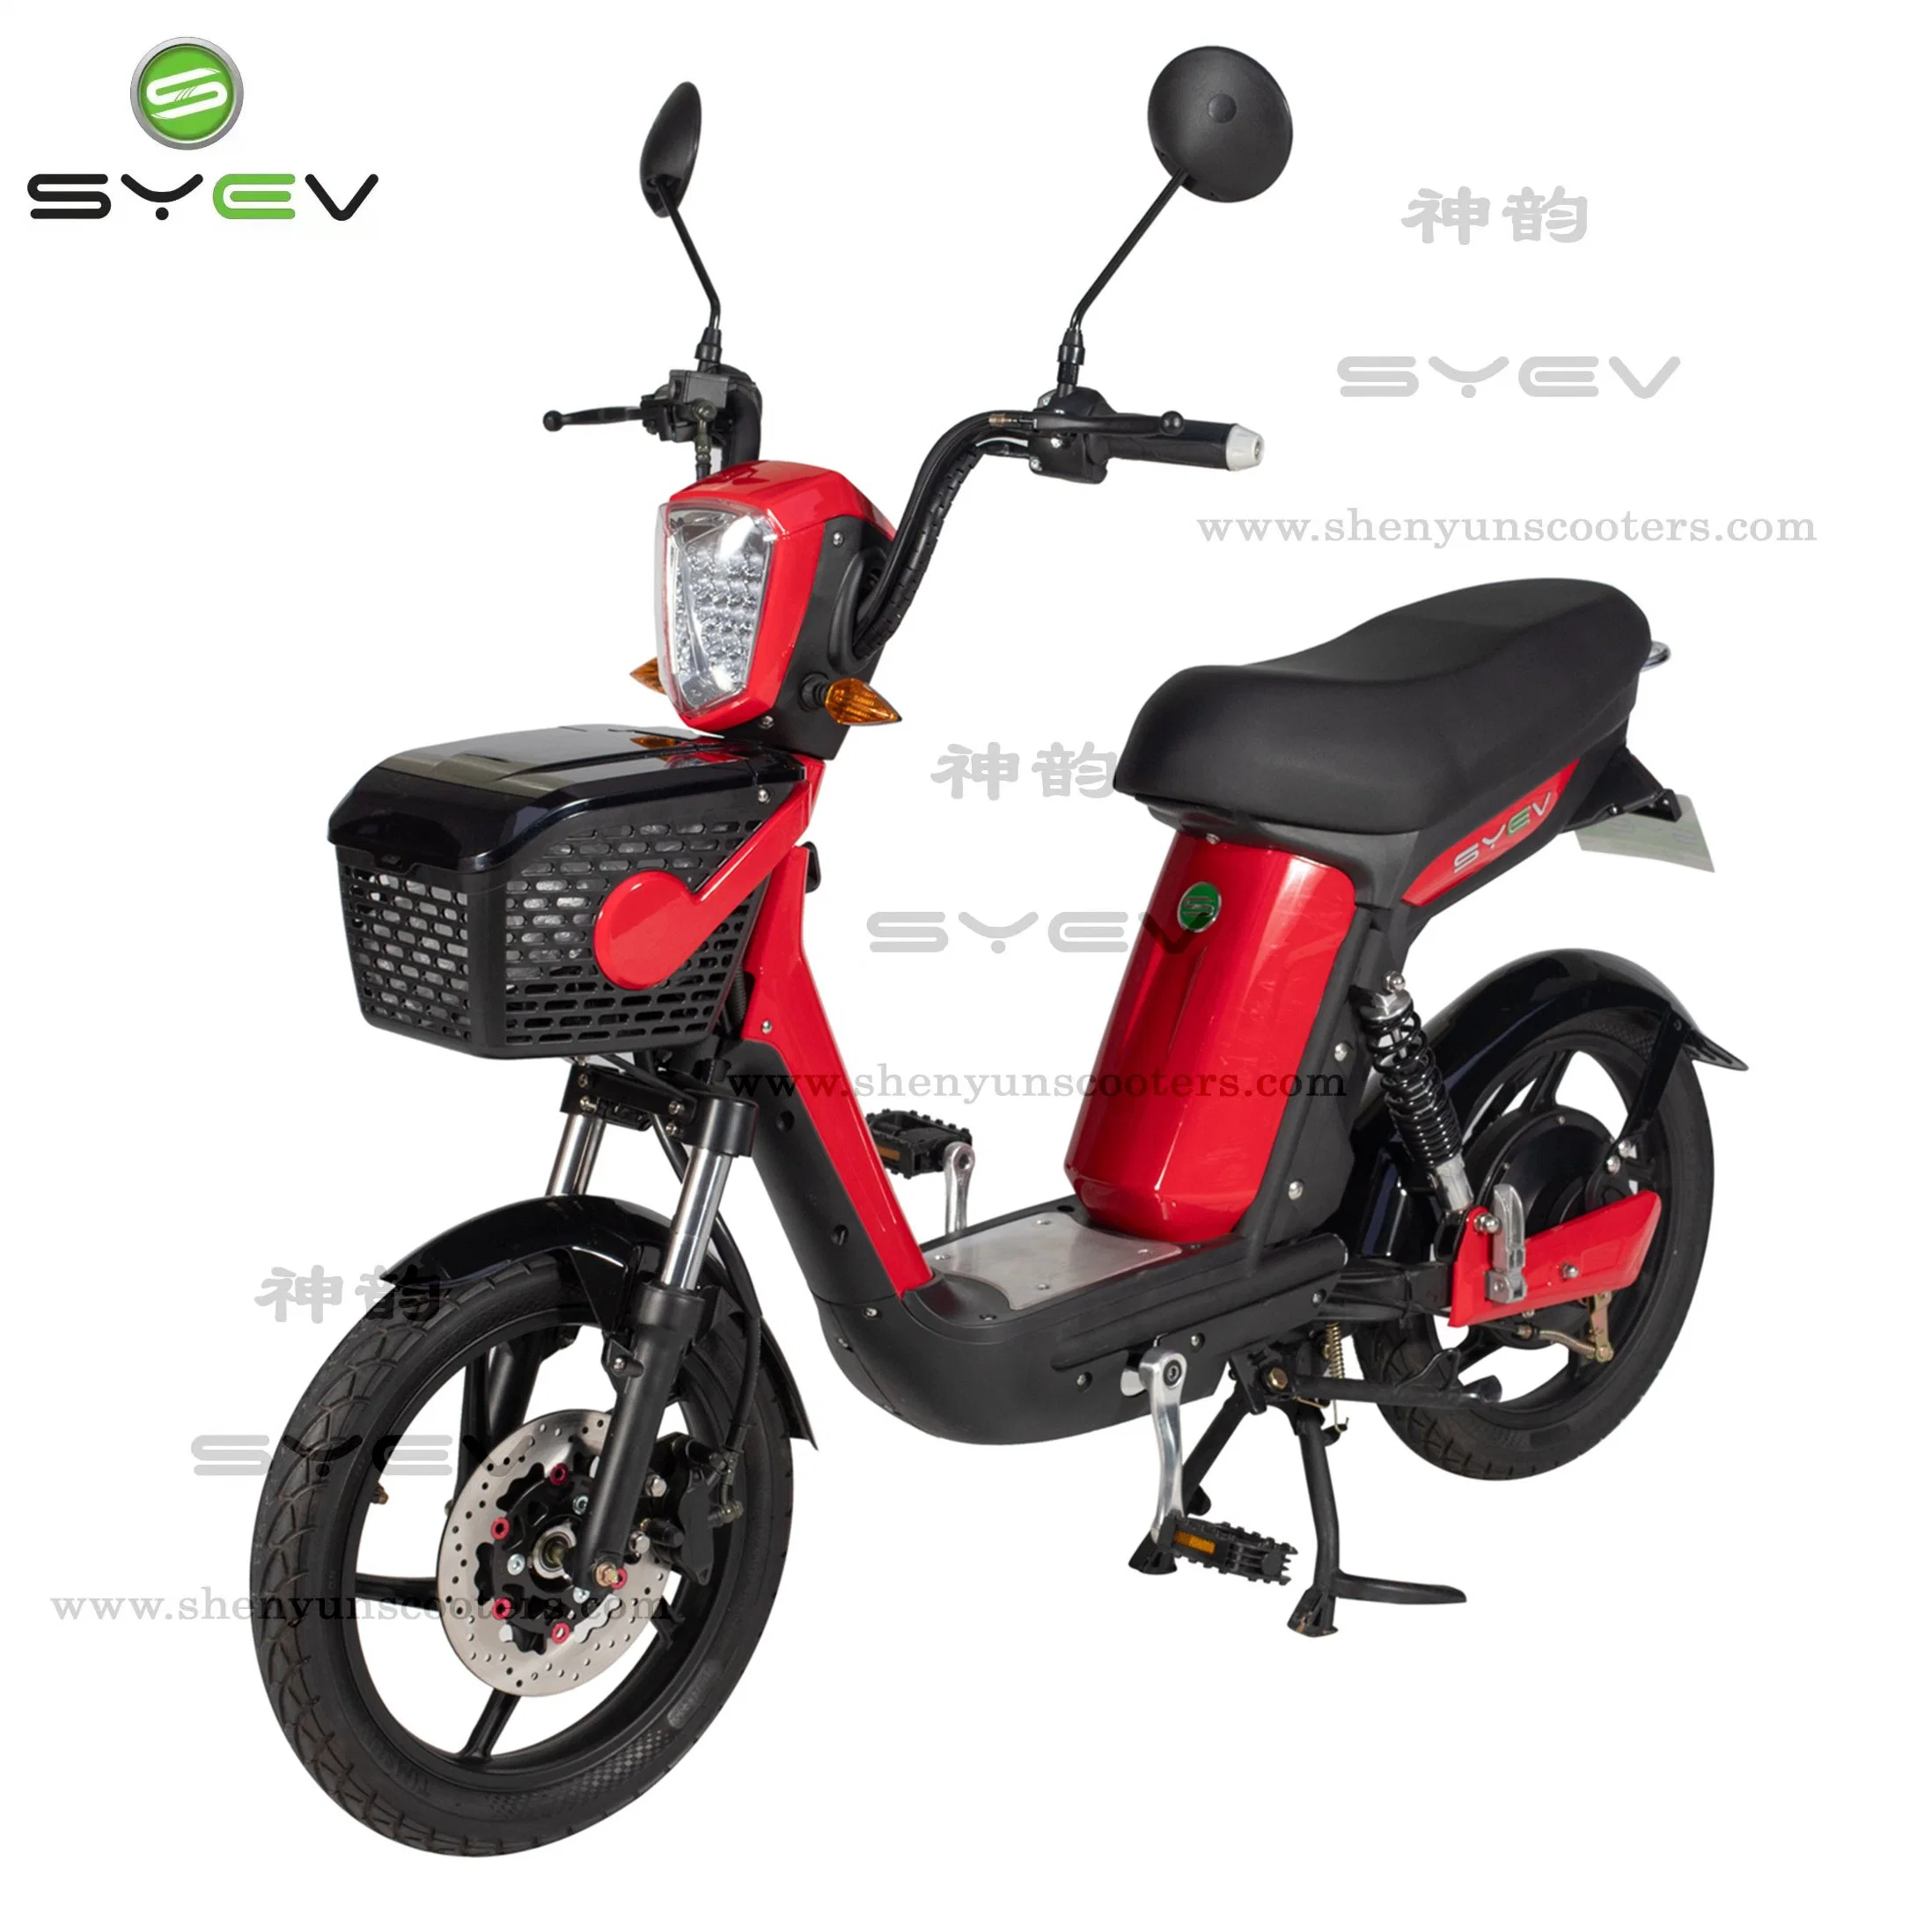 Оптовая торговля CE Mini Racing Motorcycle дешево Цена 2 2 Колесный внедорожников 48V 500 Вт Автомобиль мобильность E велосипед Электрический скутер со съемным аккумулятором